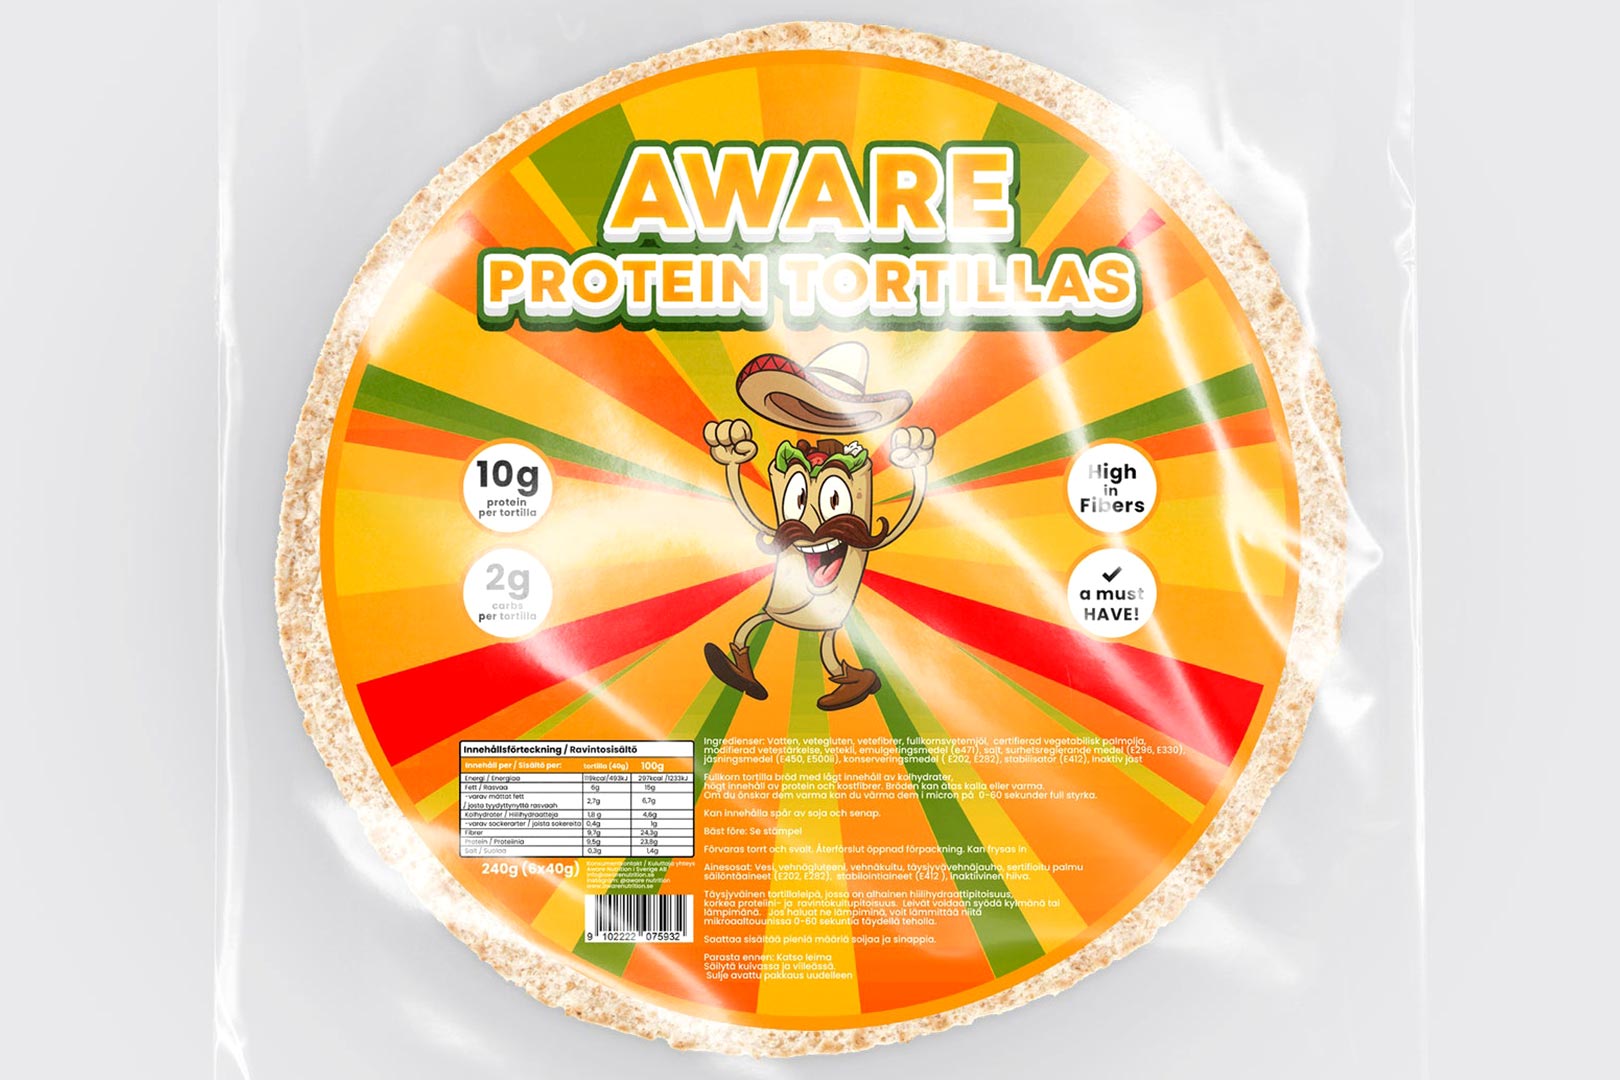 Aware Protein Tortillas